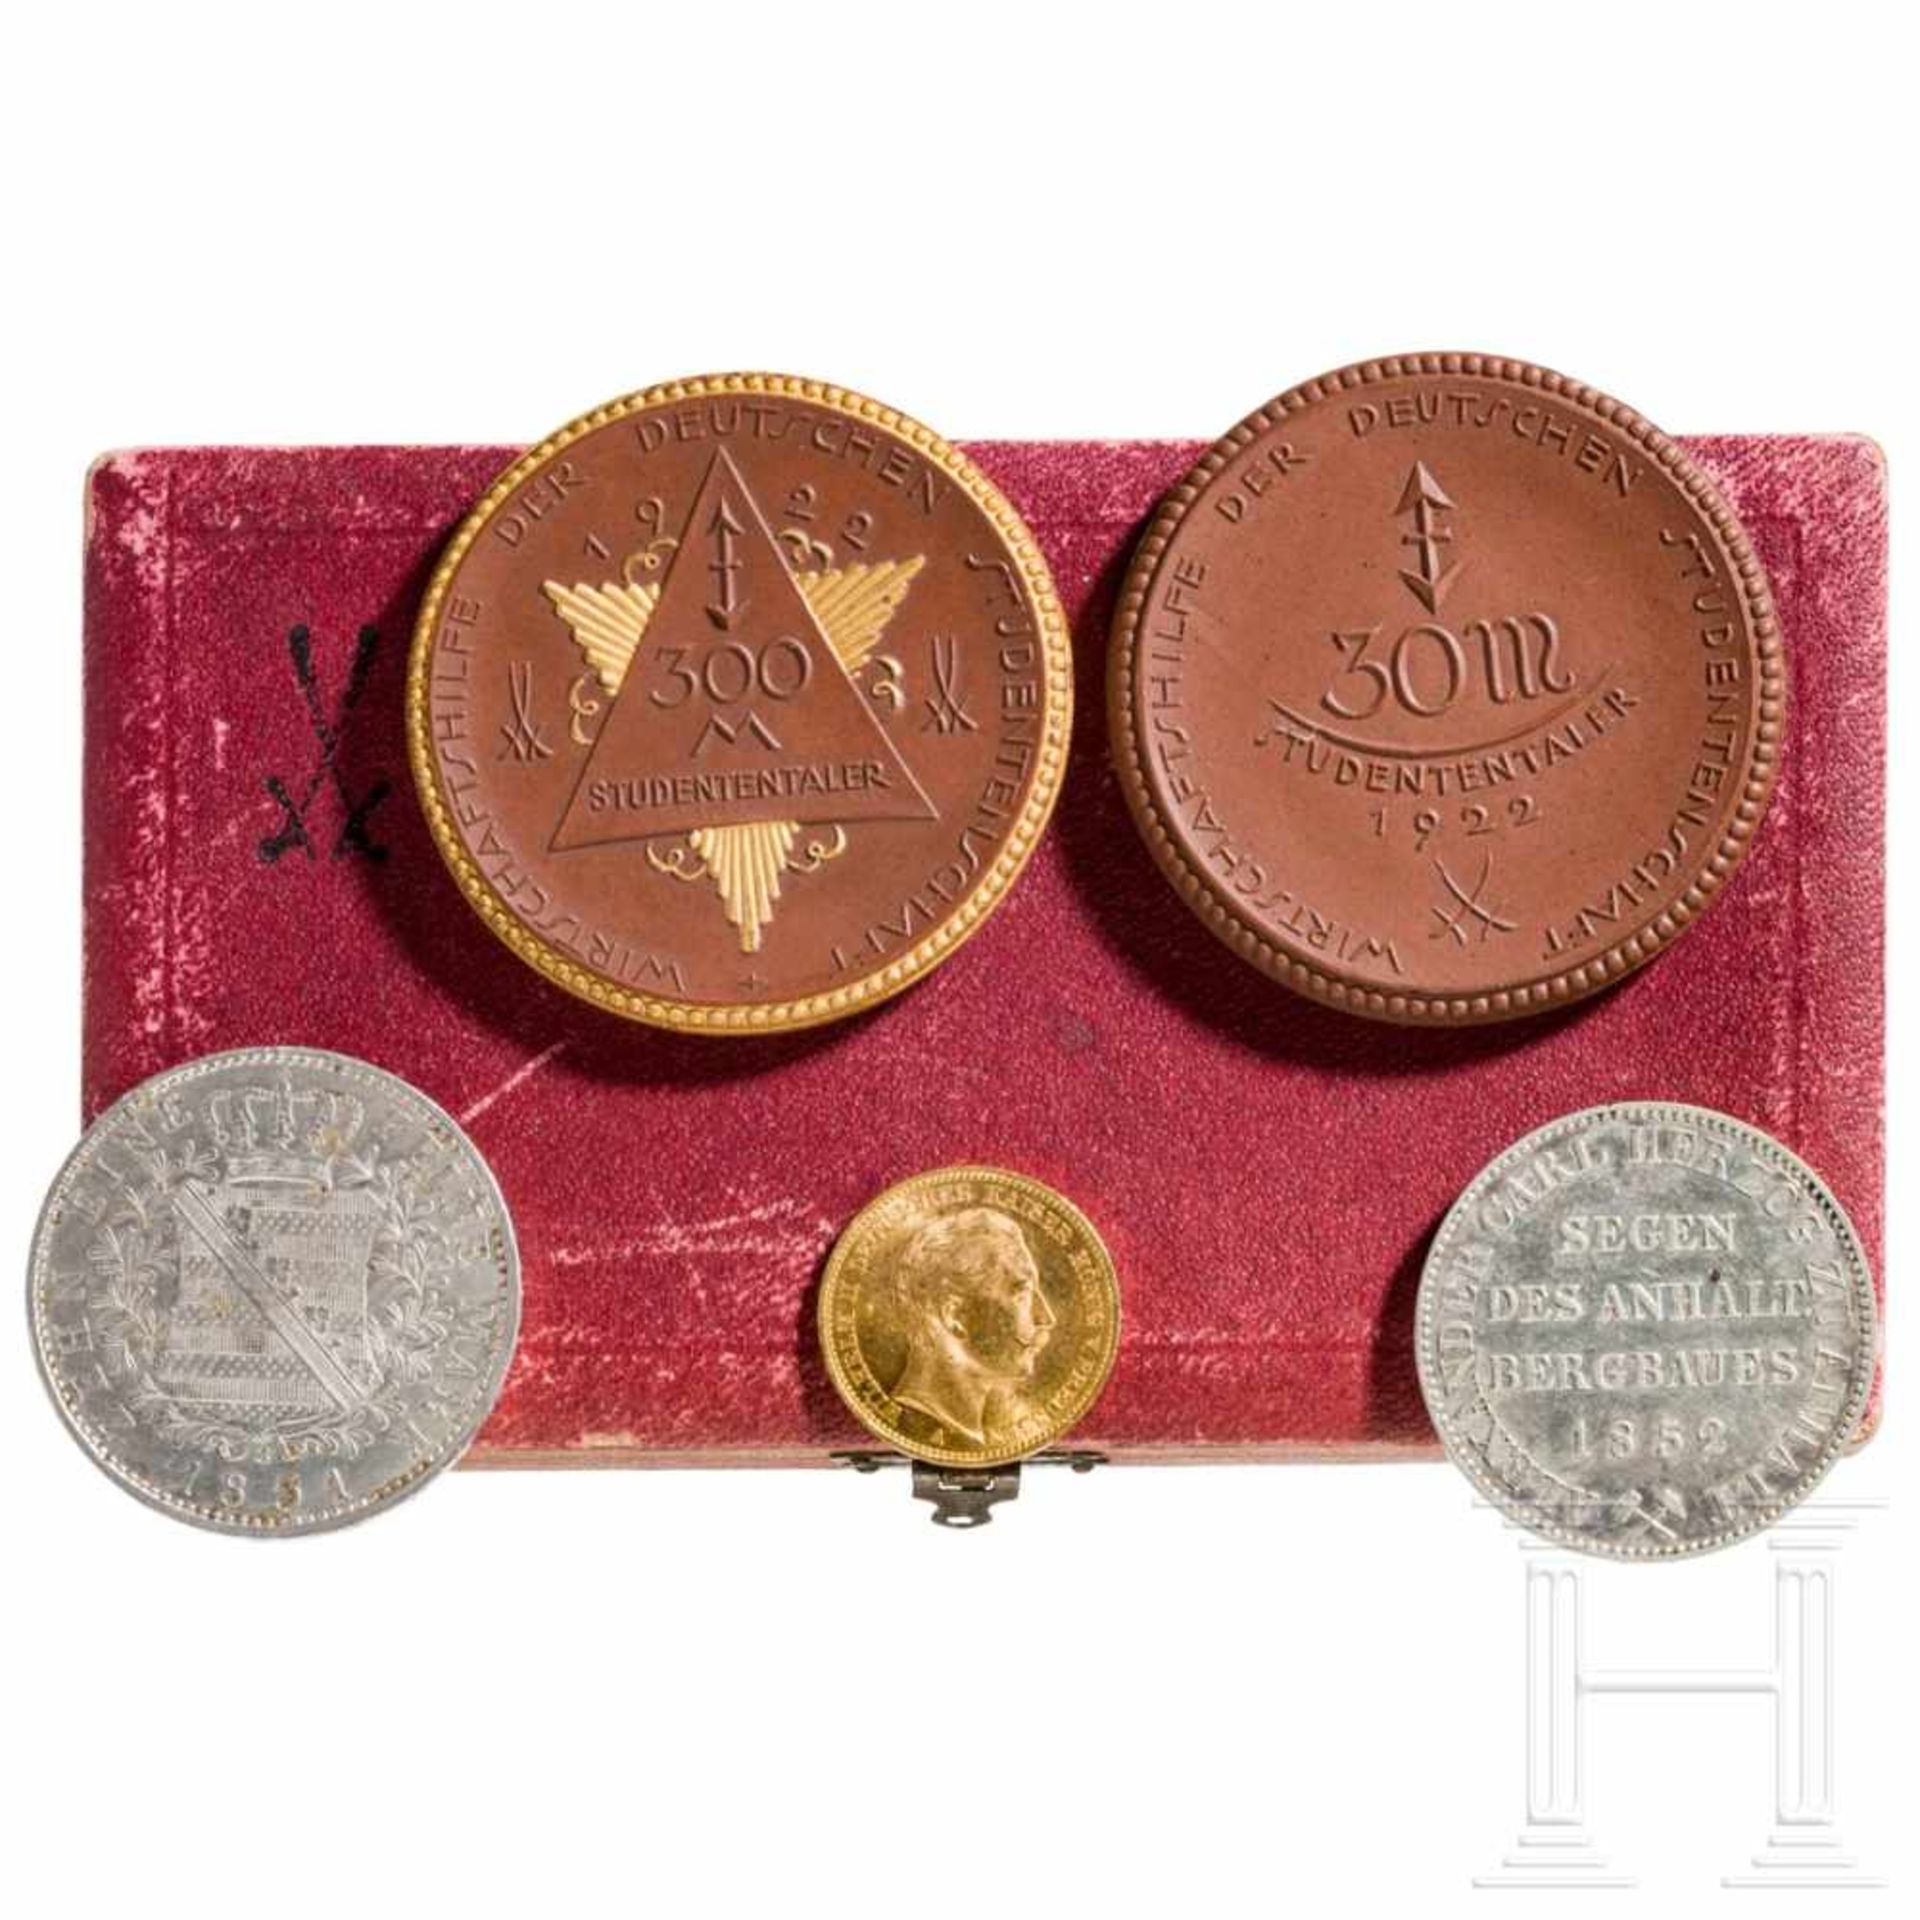 Porzellan Manufaktur Meissen - Medaillen im Etui, Gold- und Silbermünzen - Deutsches Kaiserreich, um - Bild 2 aus 2